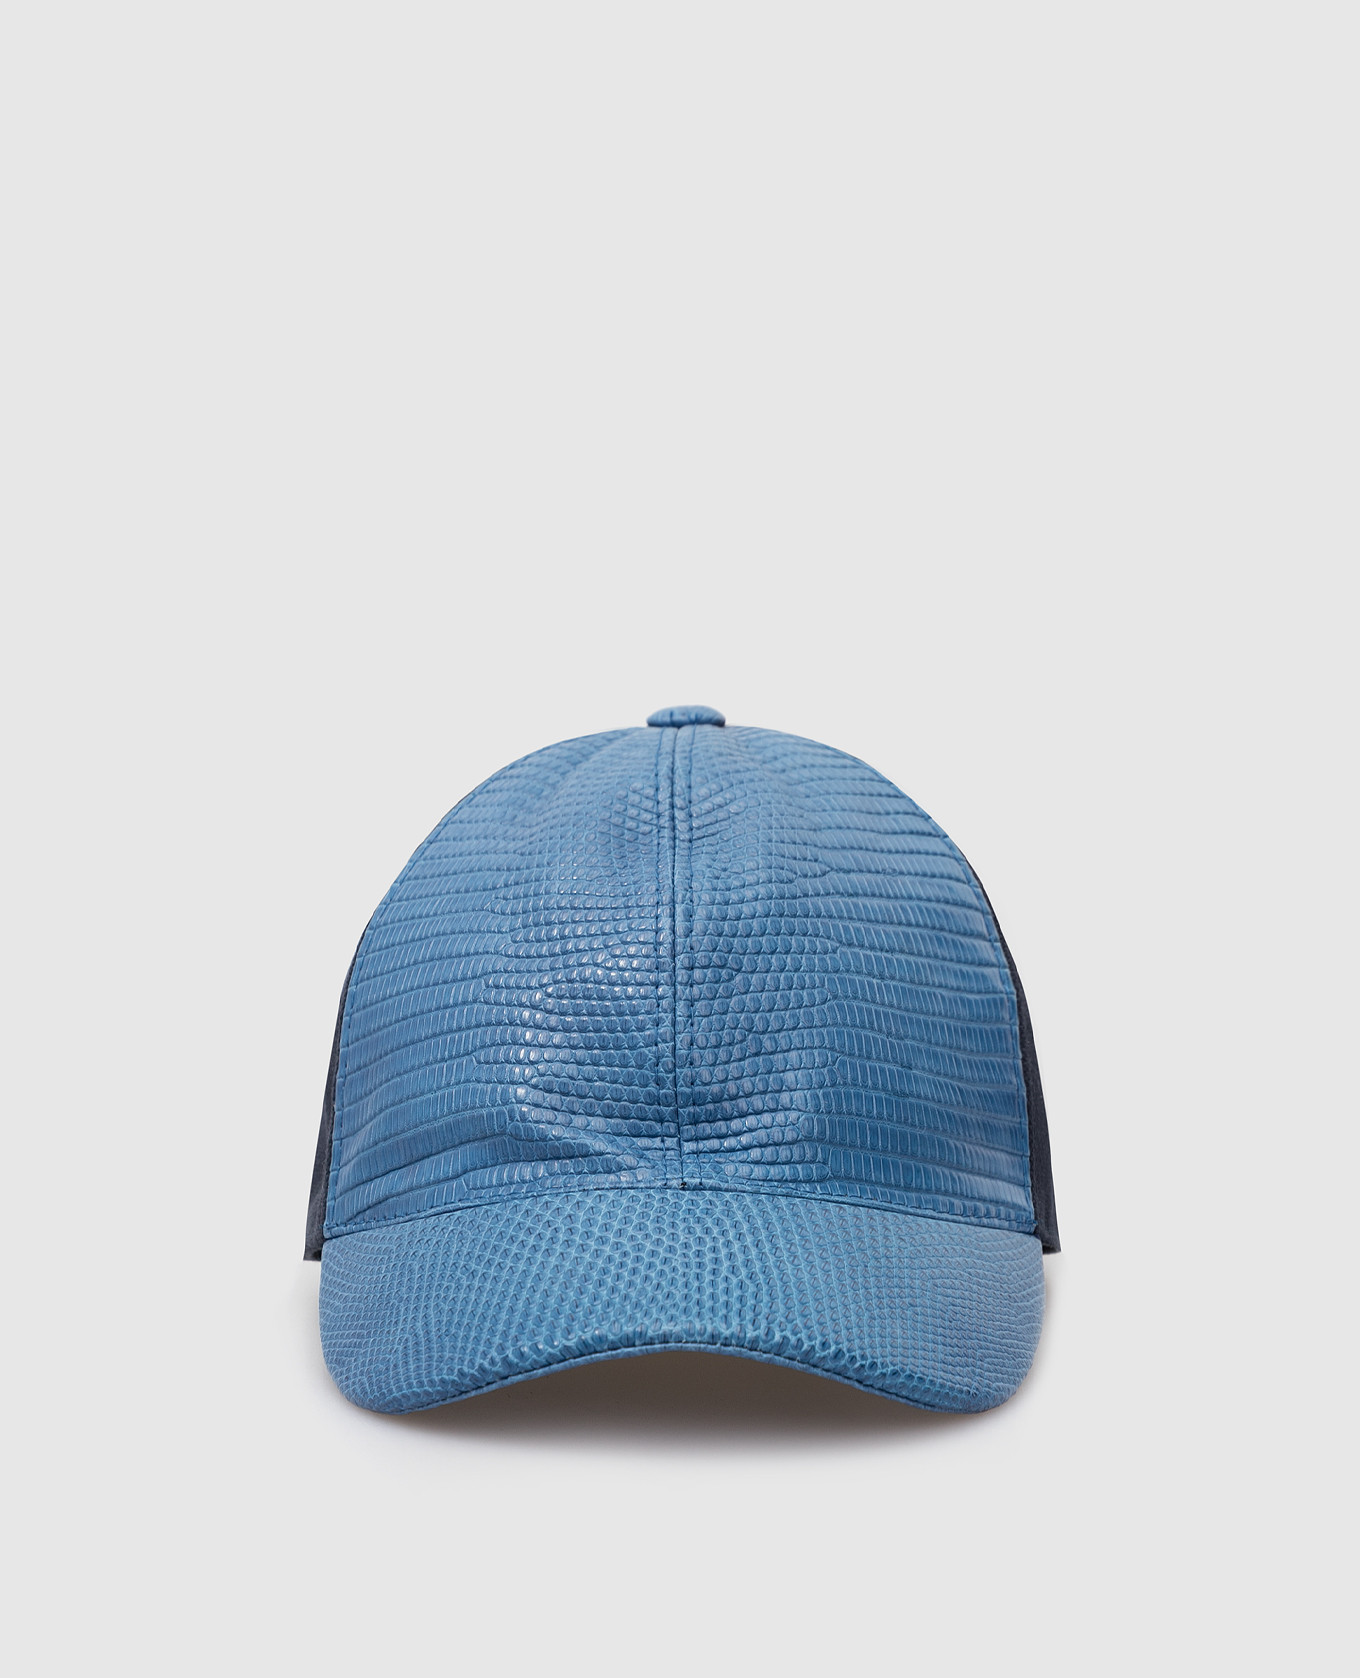 Children's dark blue cap with leather inserts